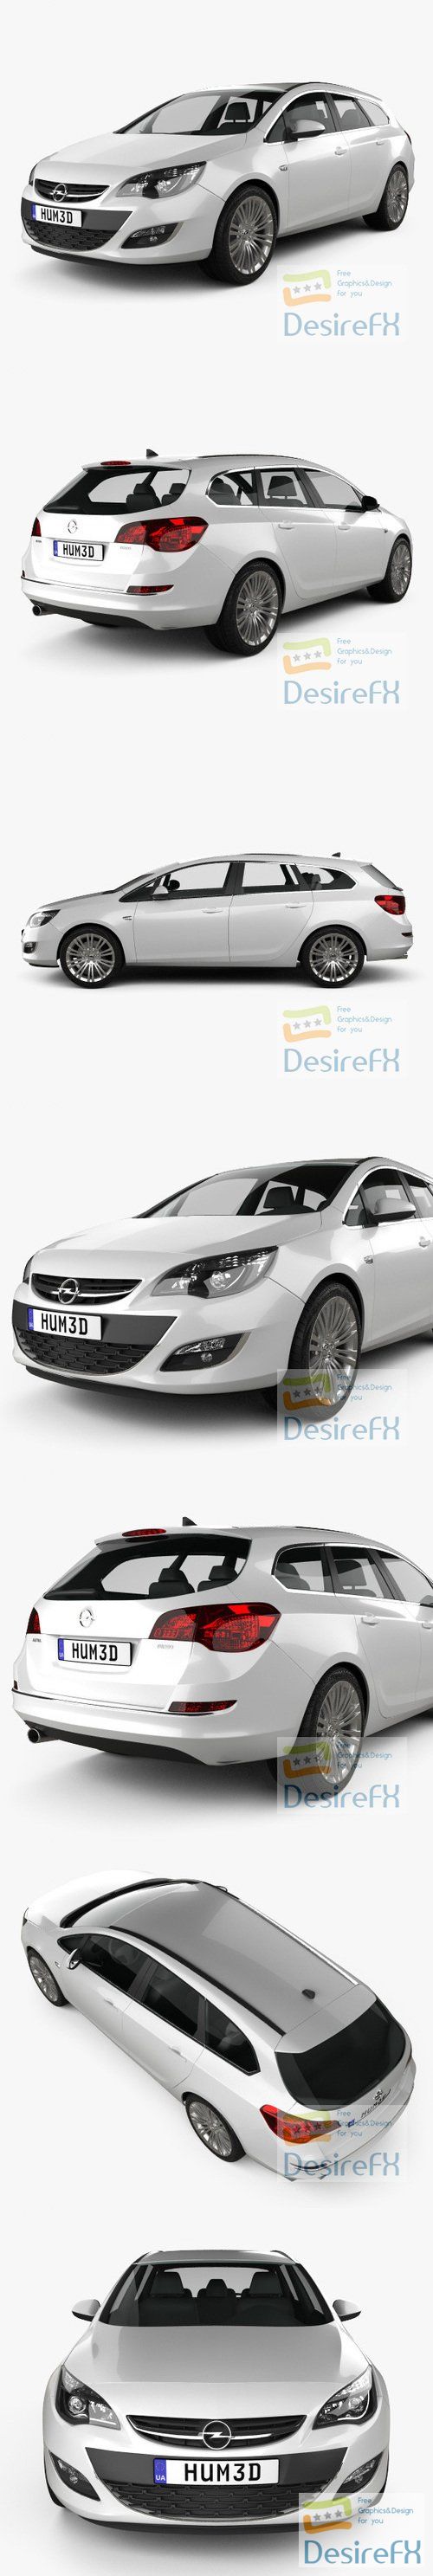 Opel Astra J sports tourer 2012 3D Model